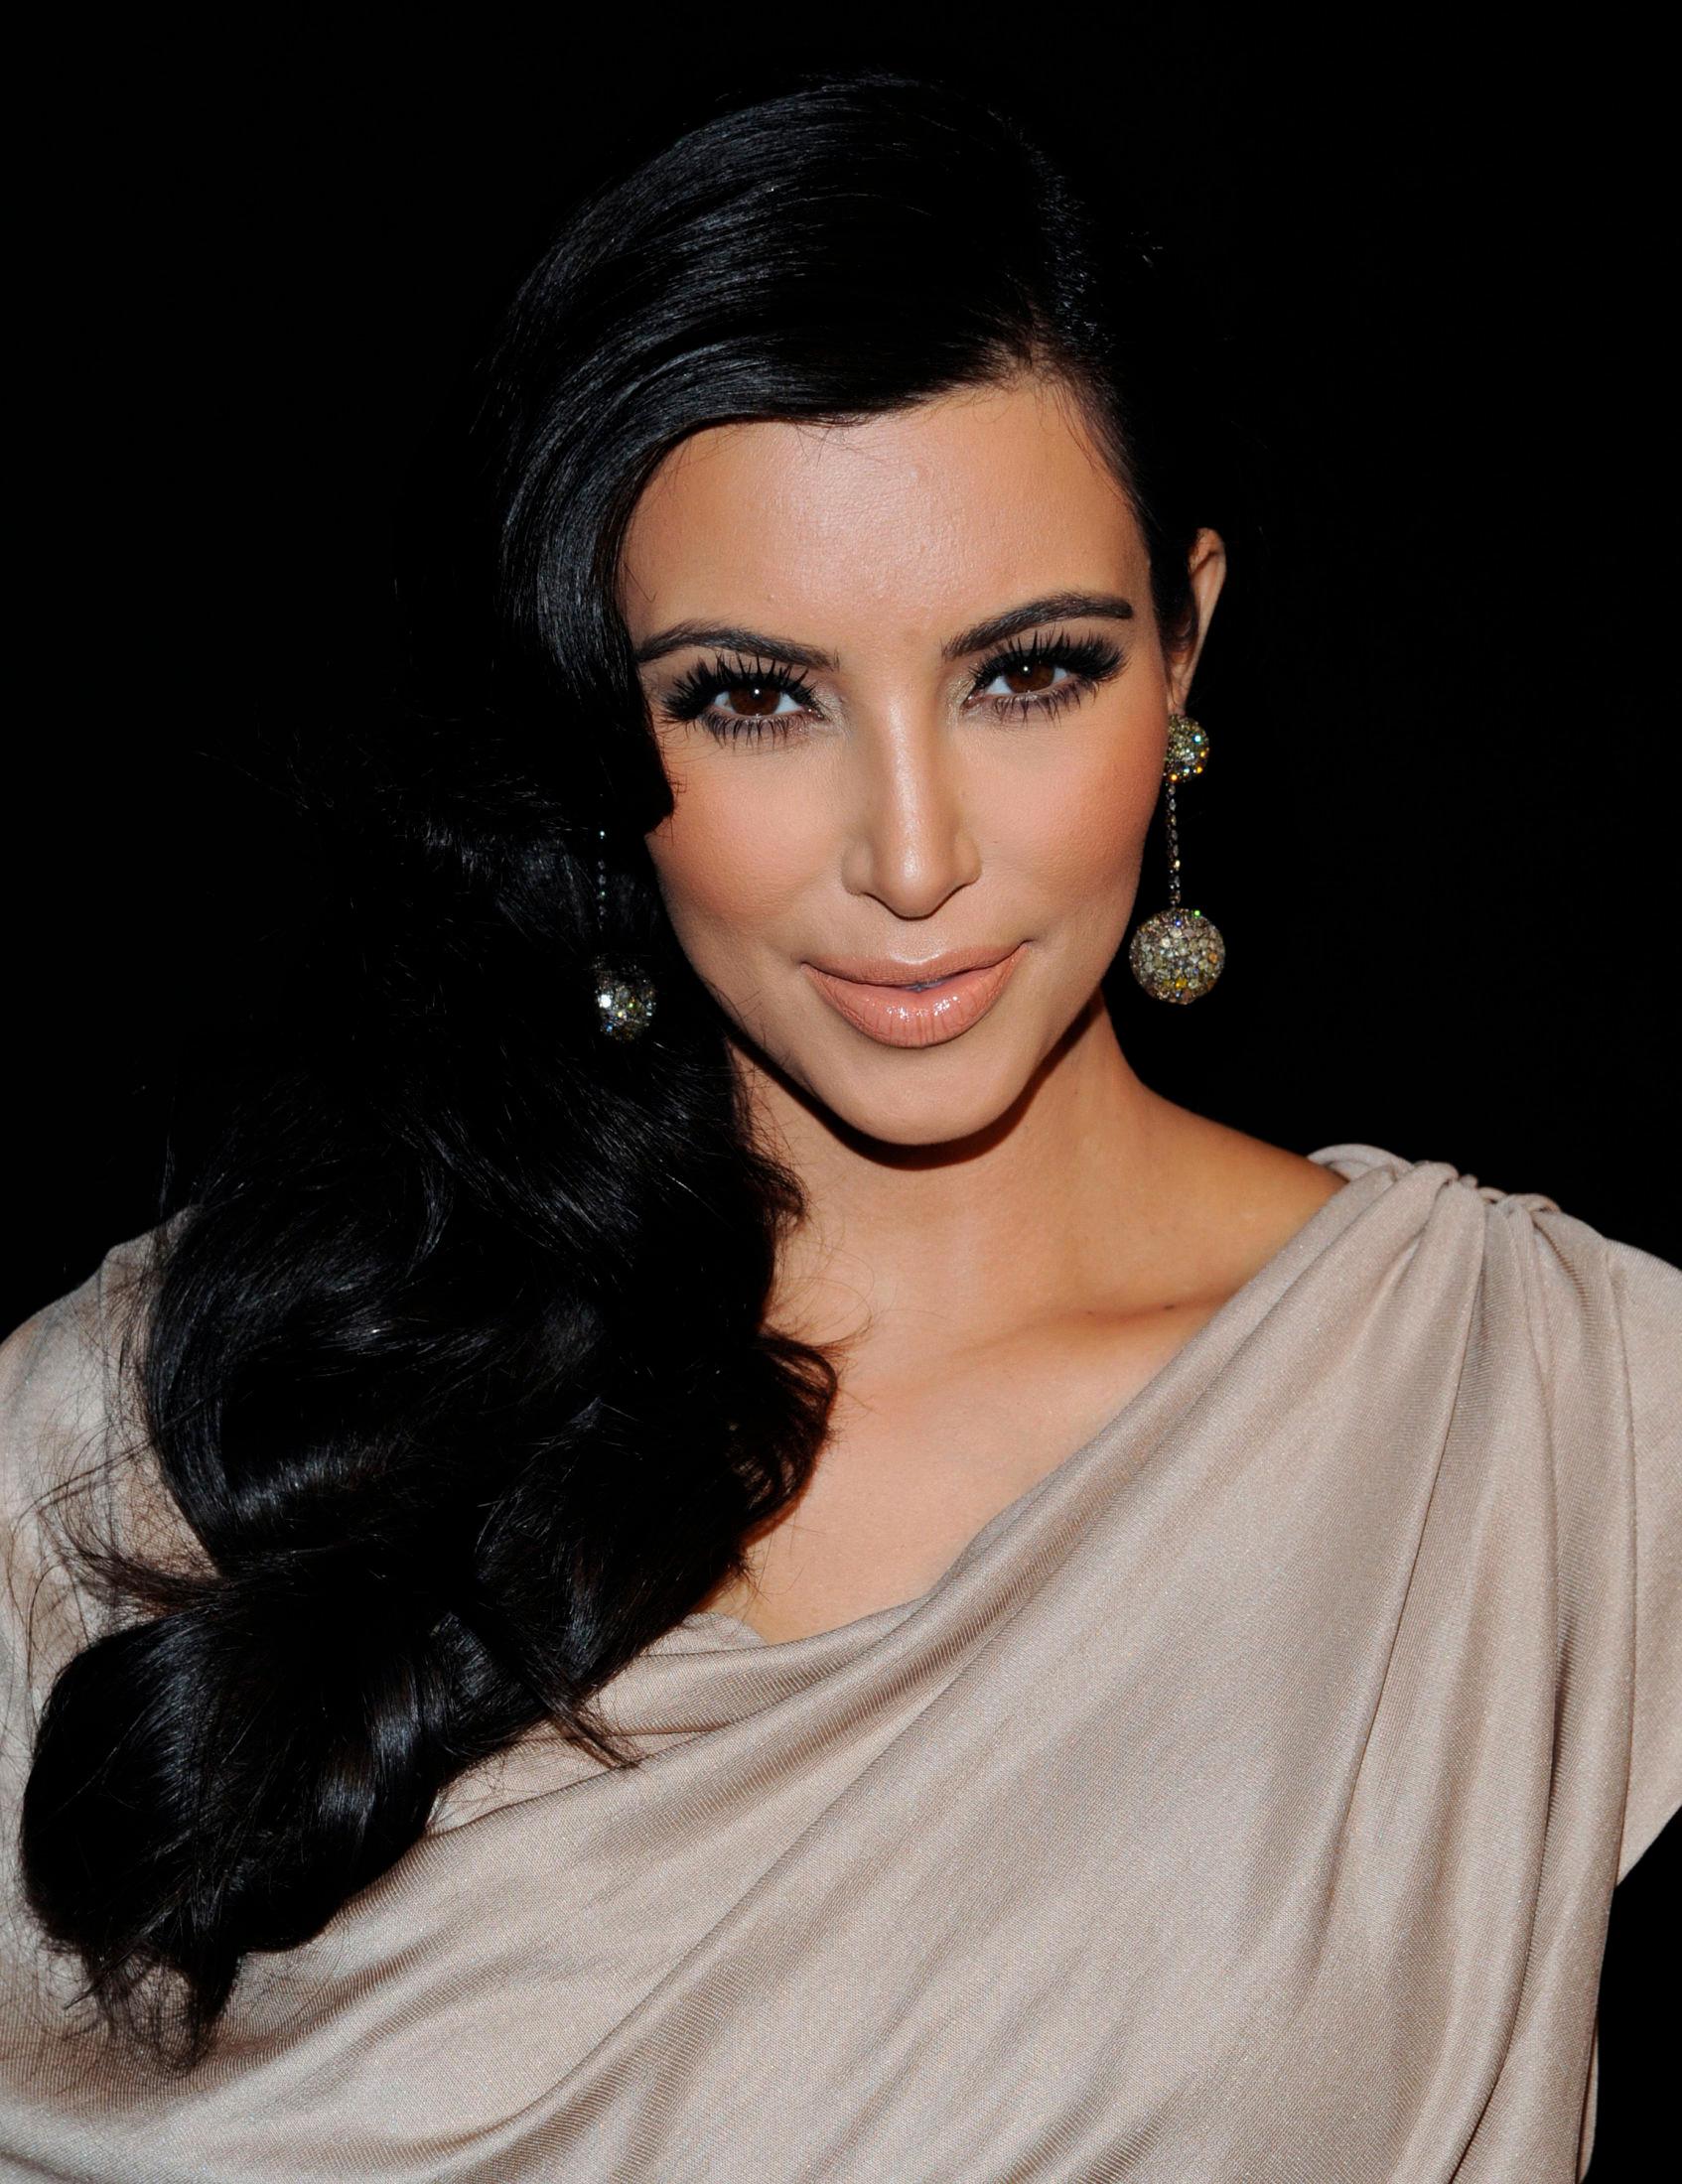 MØRKE OG MARKERTE: Kim Kardashian var en av dem som bidro til at øyenbrynstrenden beveget seg til skarpe kanter og tydelig sminket. Foto: AP